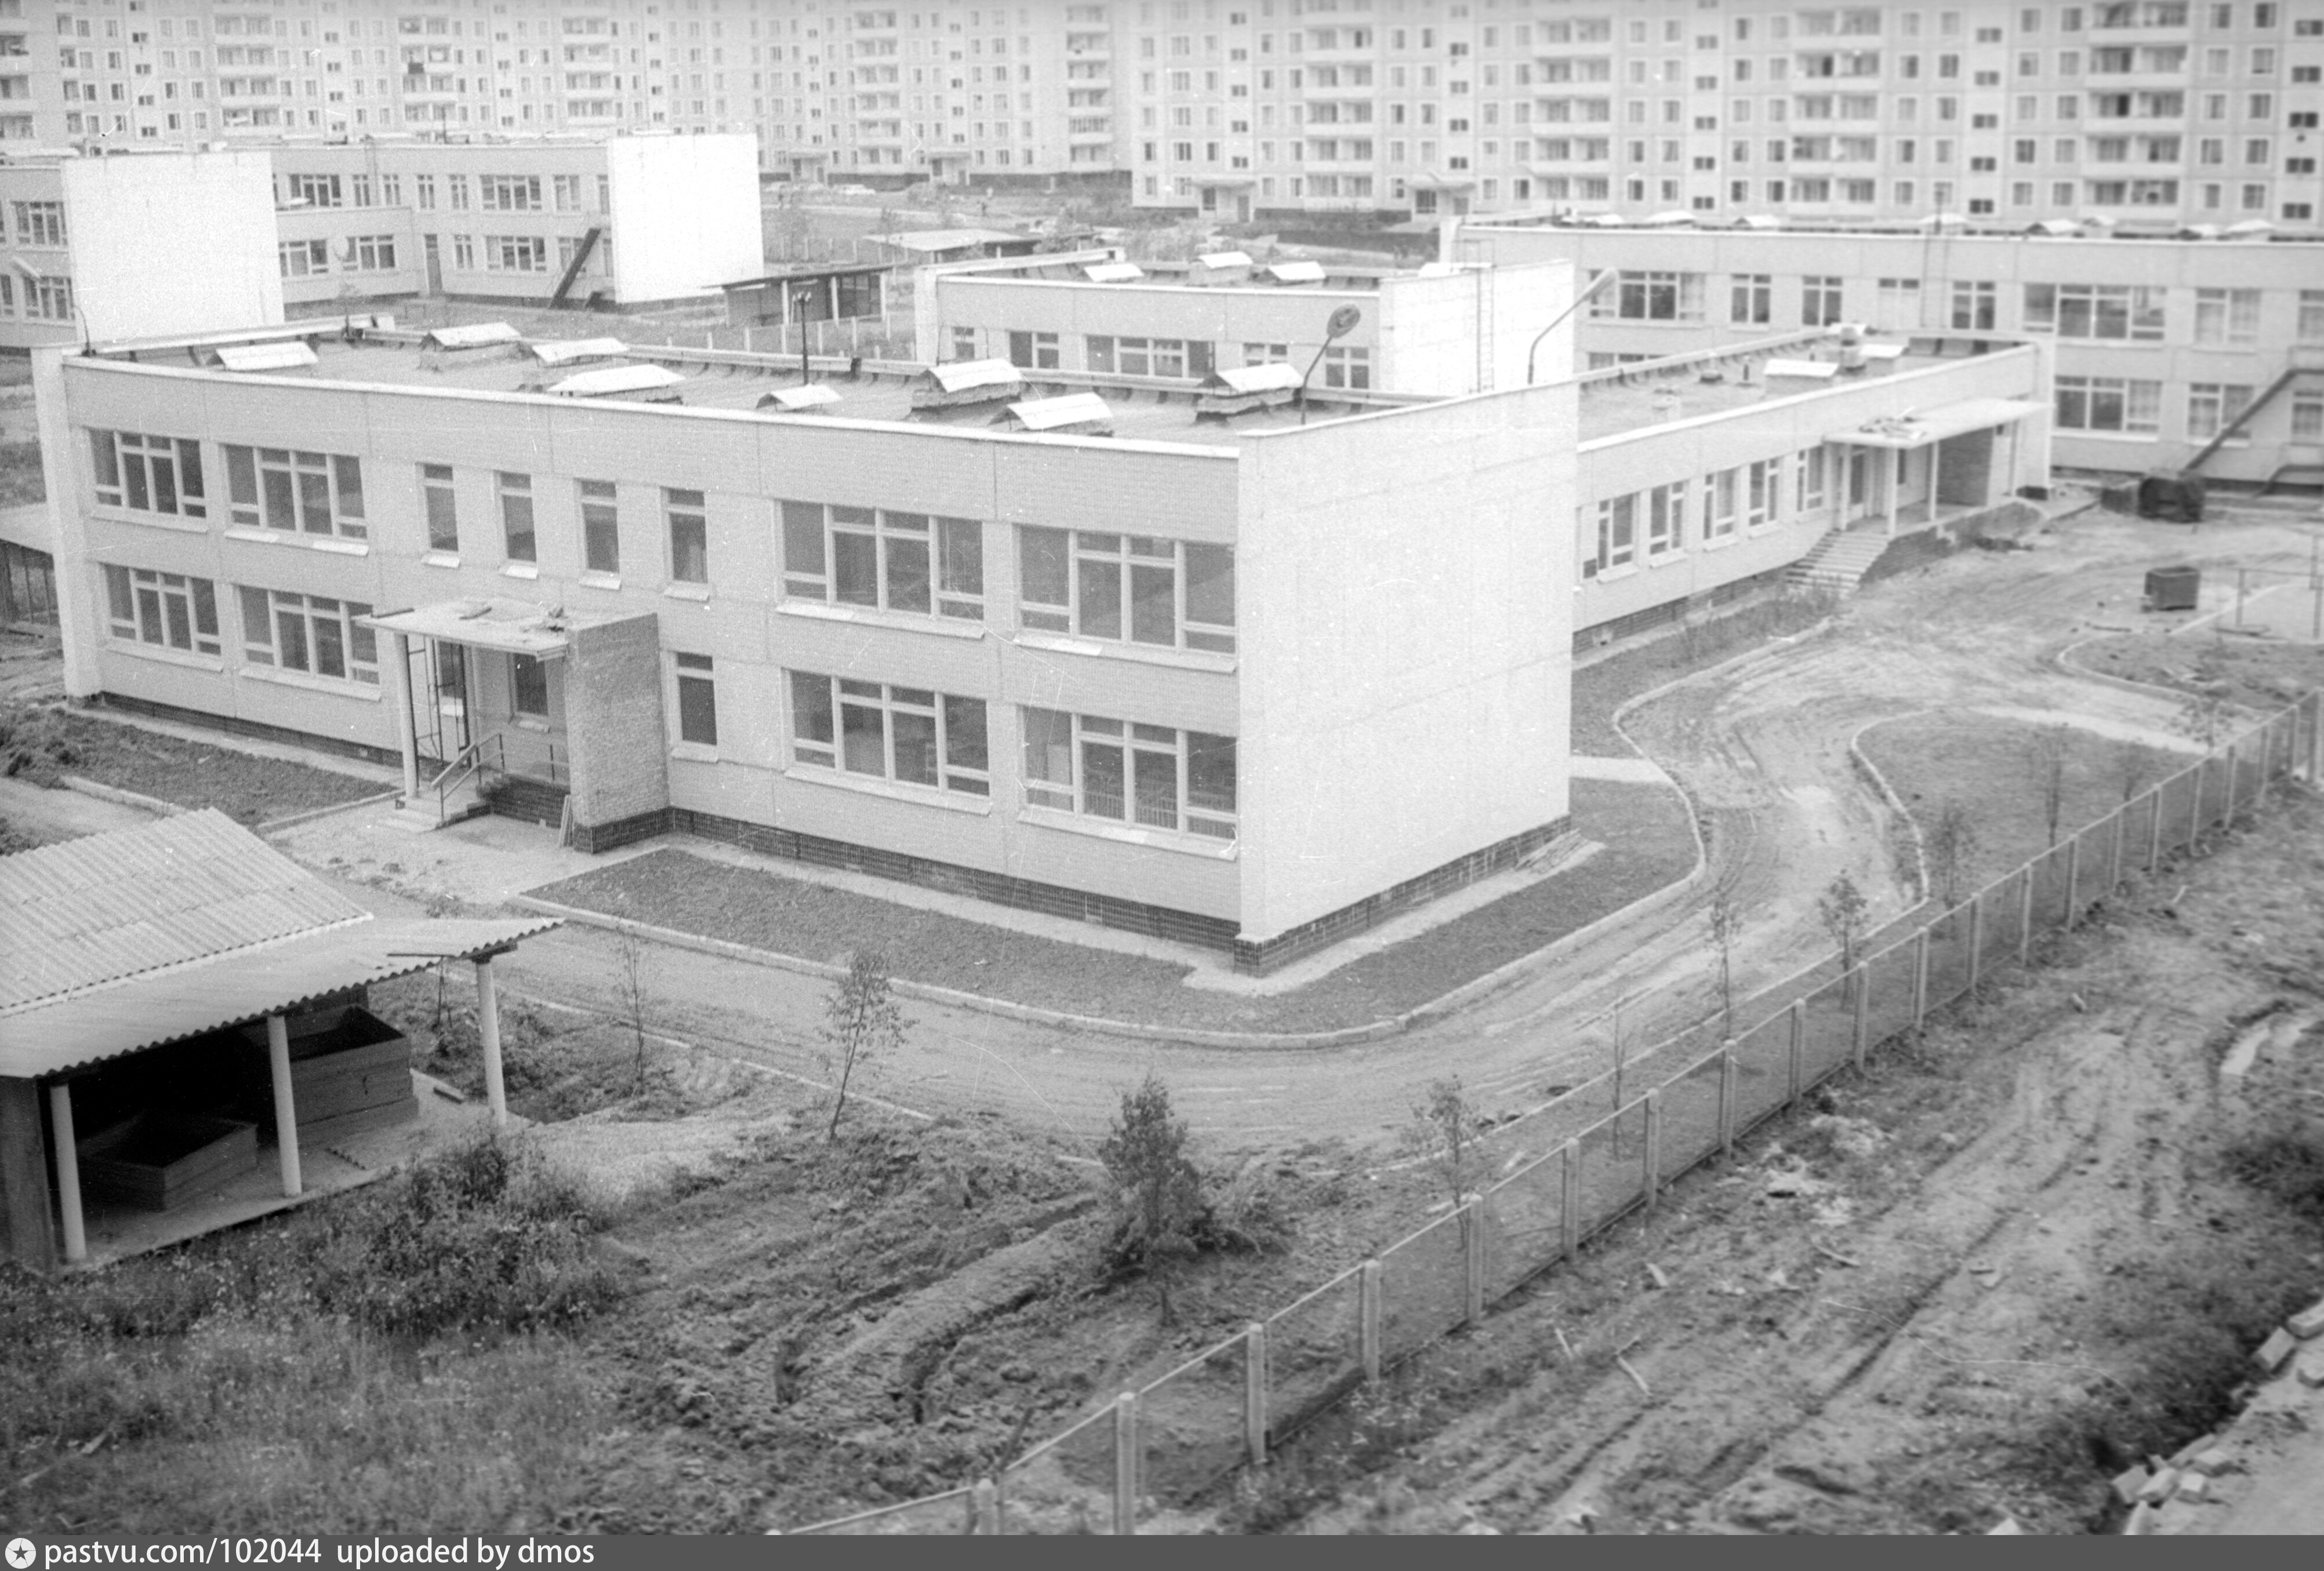 Сады ясенево. Детский сад Ясенево. Сад 1206 Ясенево. Школы района Ясенево. Ясенево 1979.